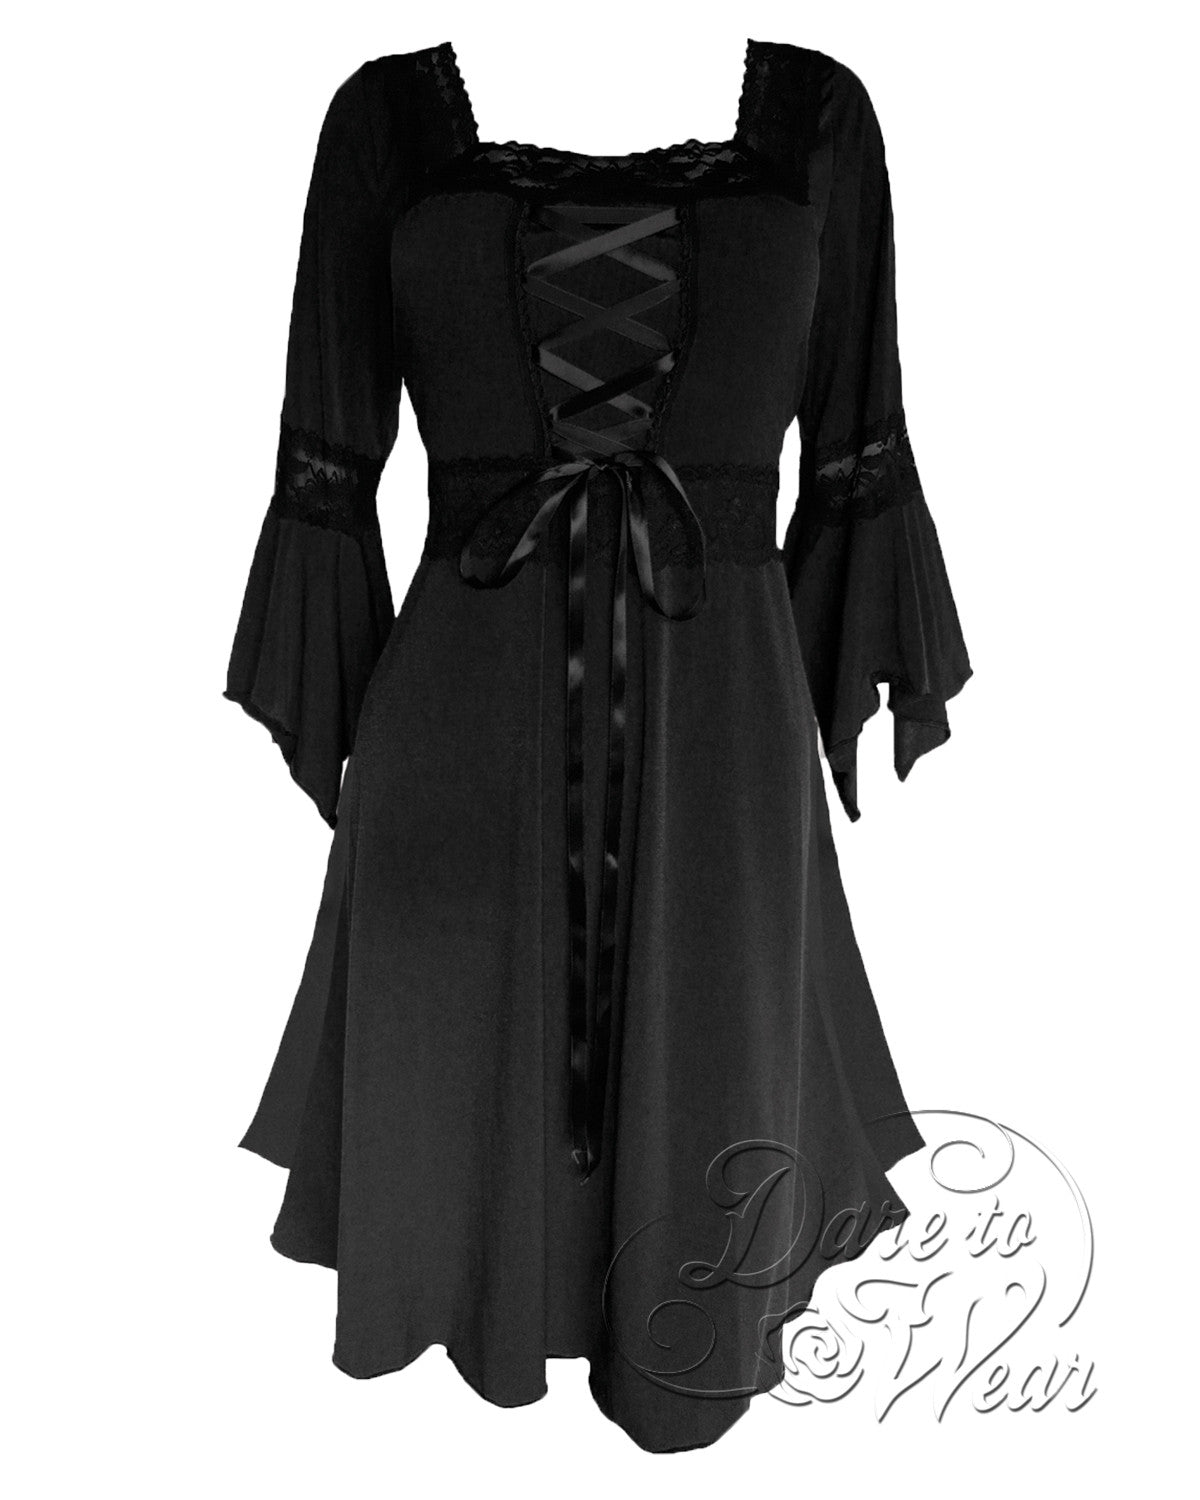 Renaissance Dress in Black  Dark Raven Victorian Gothic Corset Gown - Dare  Fashion Globe